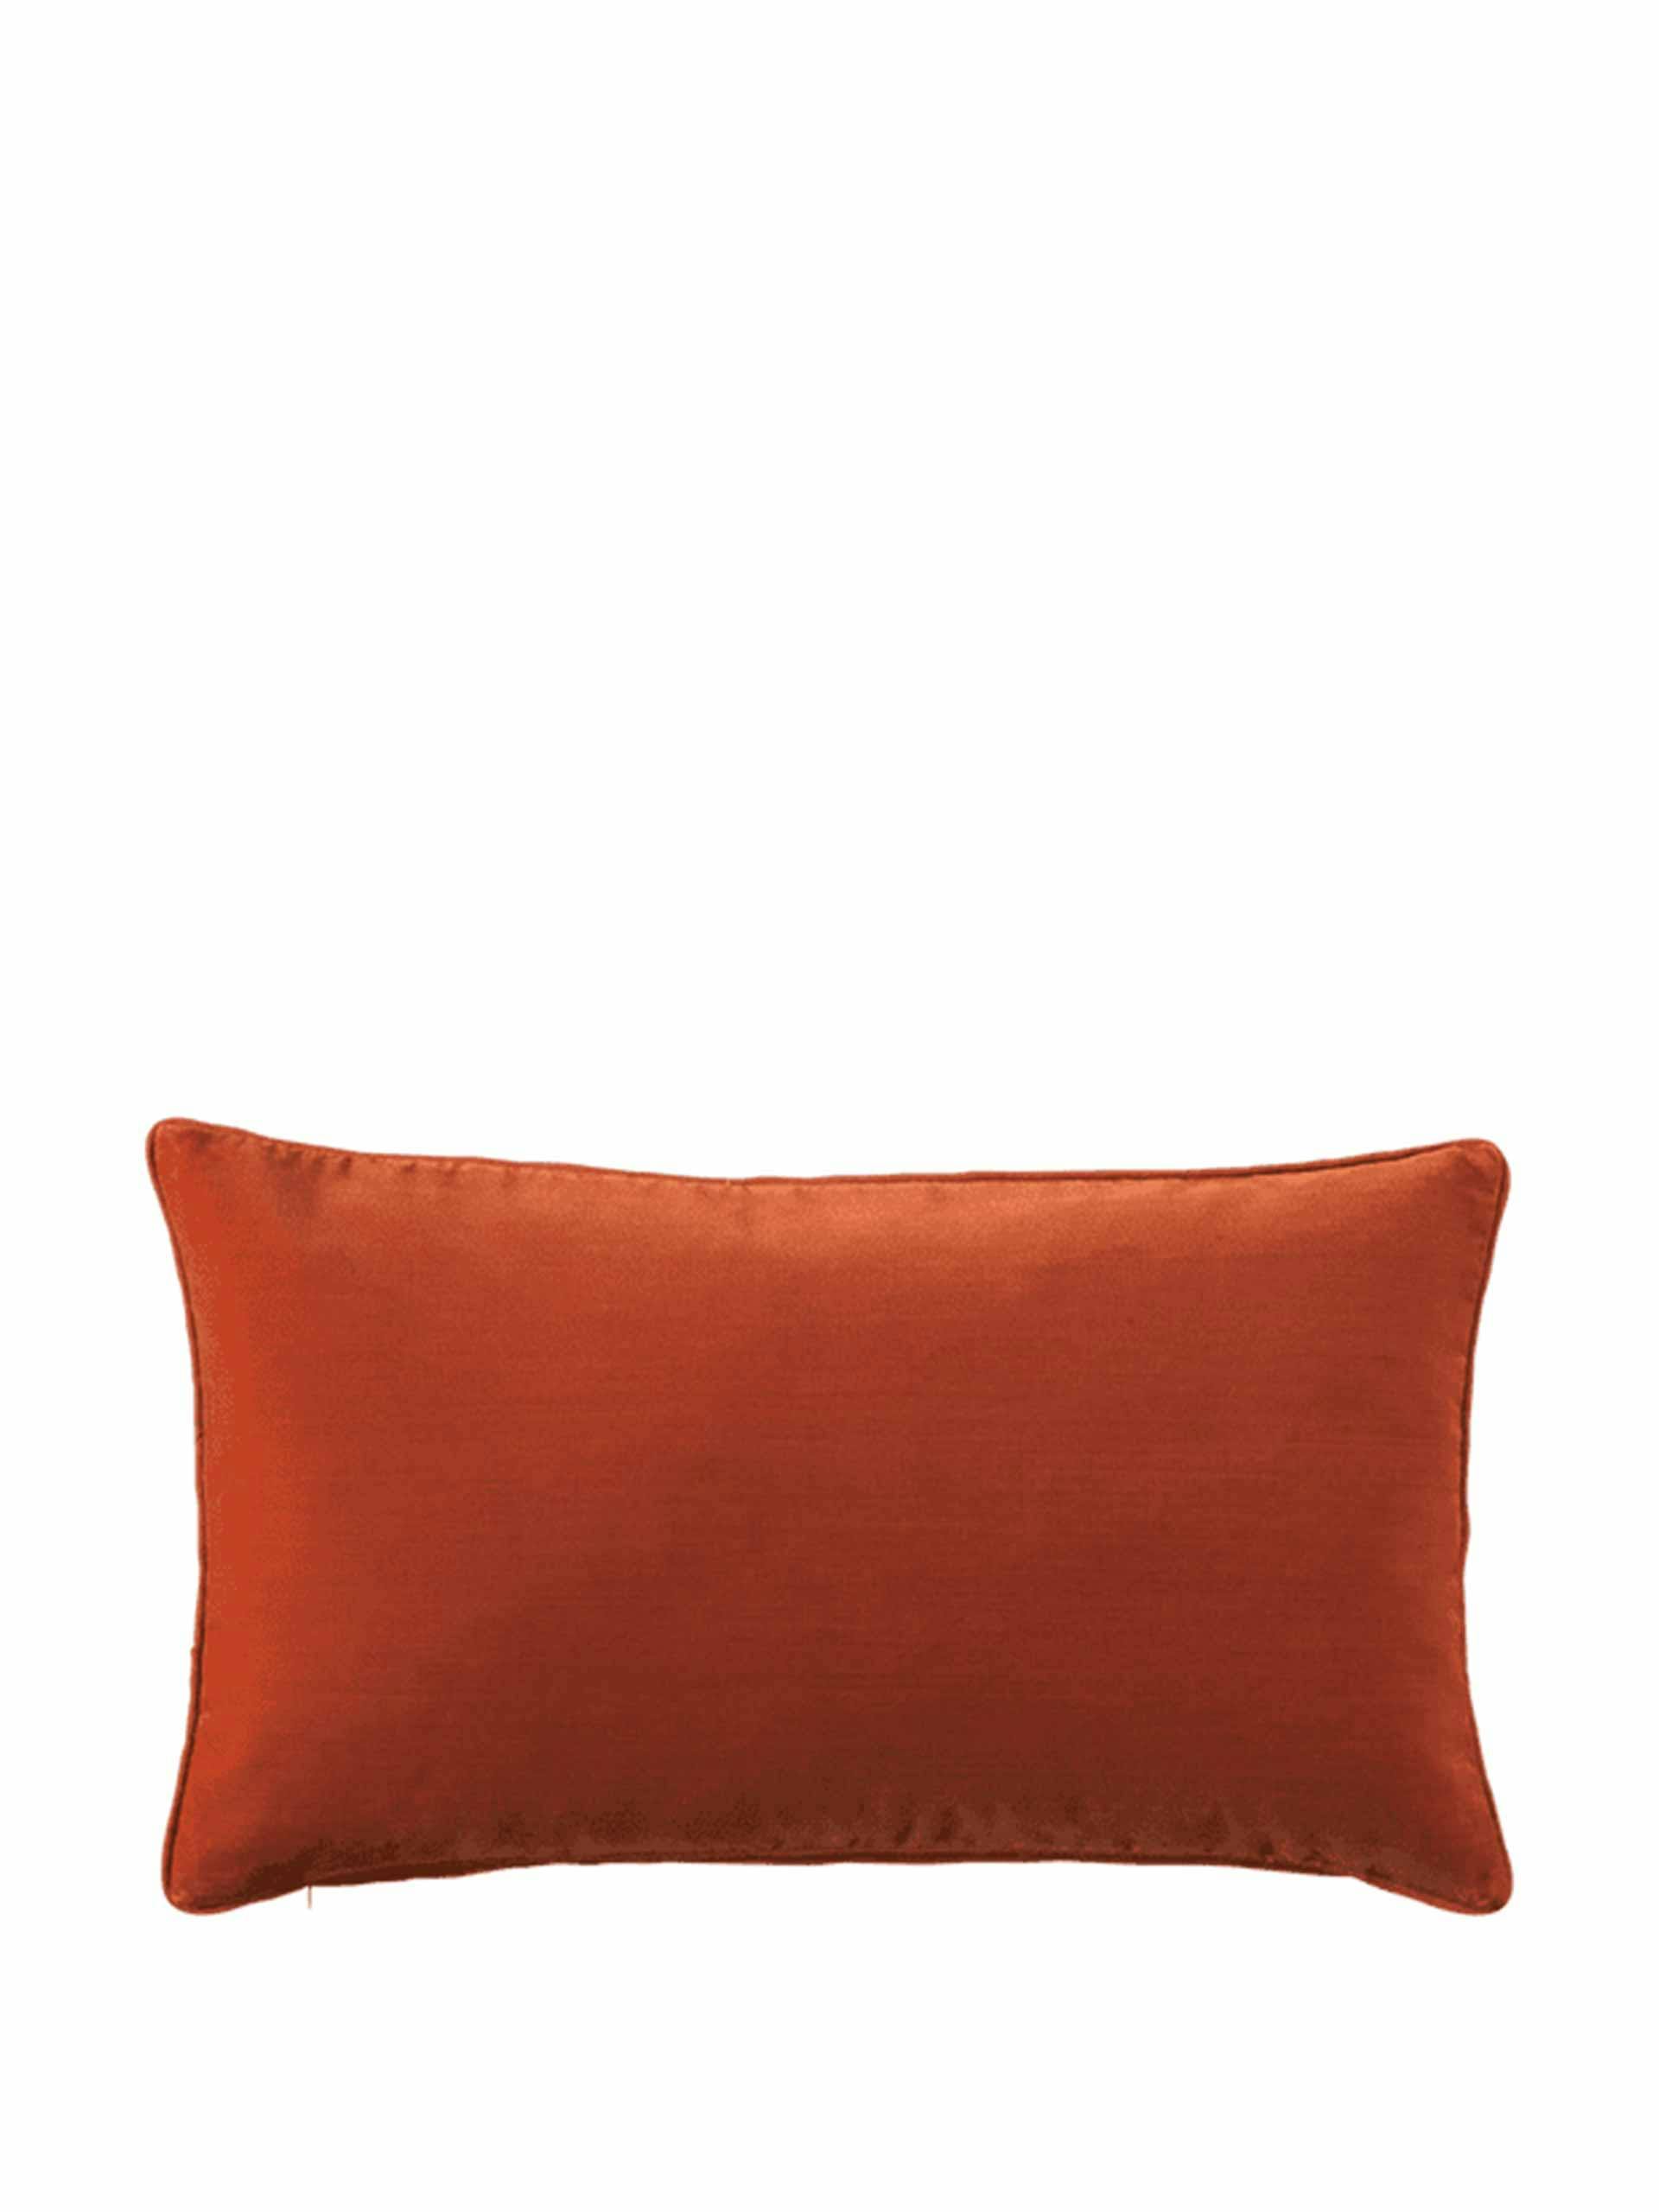 Small plain velvet pillow cover